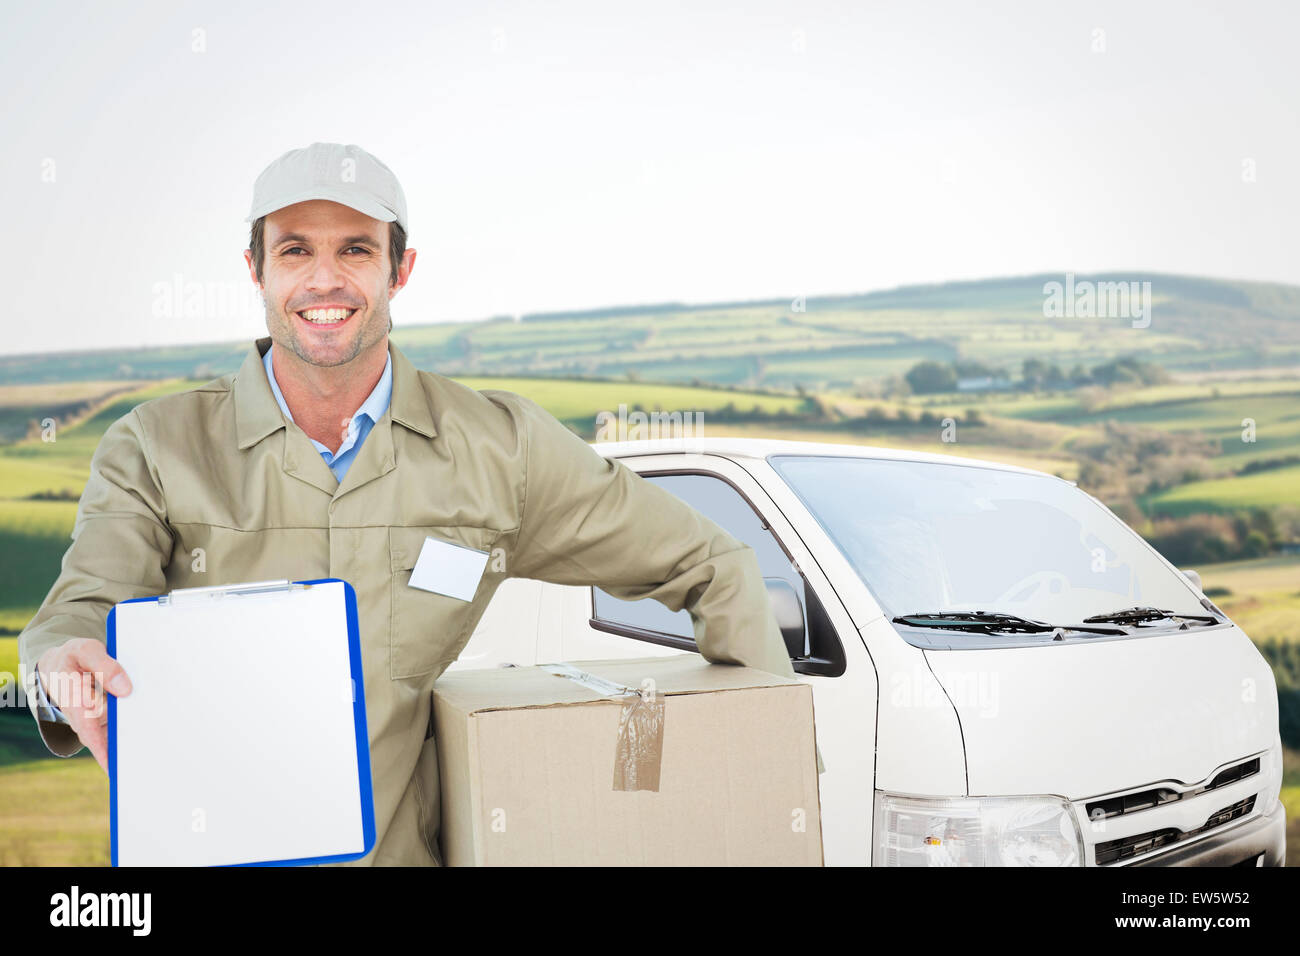 Immagine composita di felice uomo consegna con box che mostra negli appunti Foto Stock